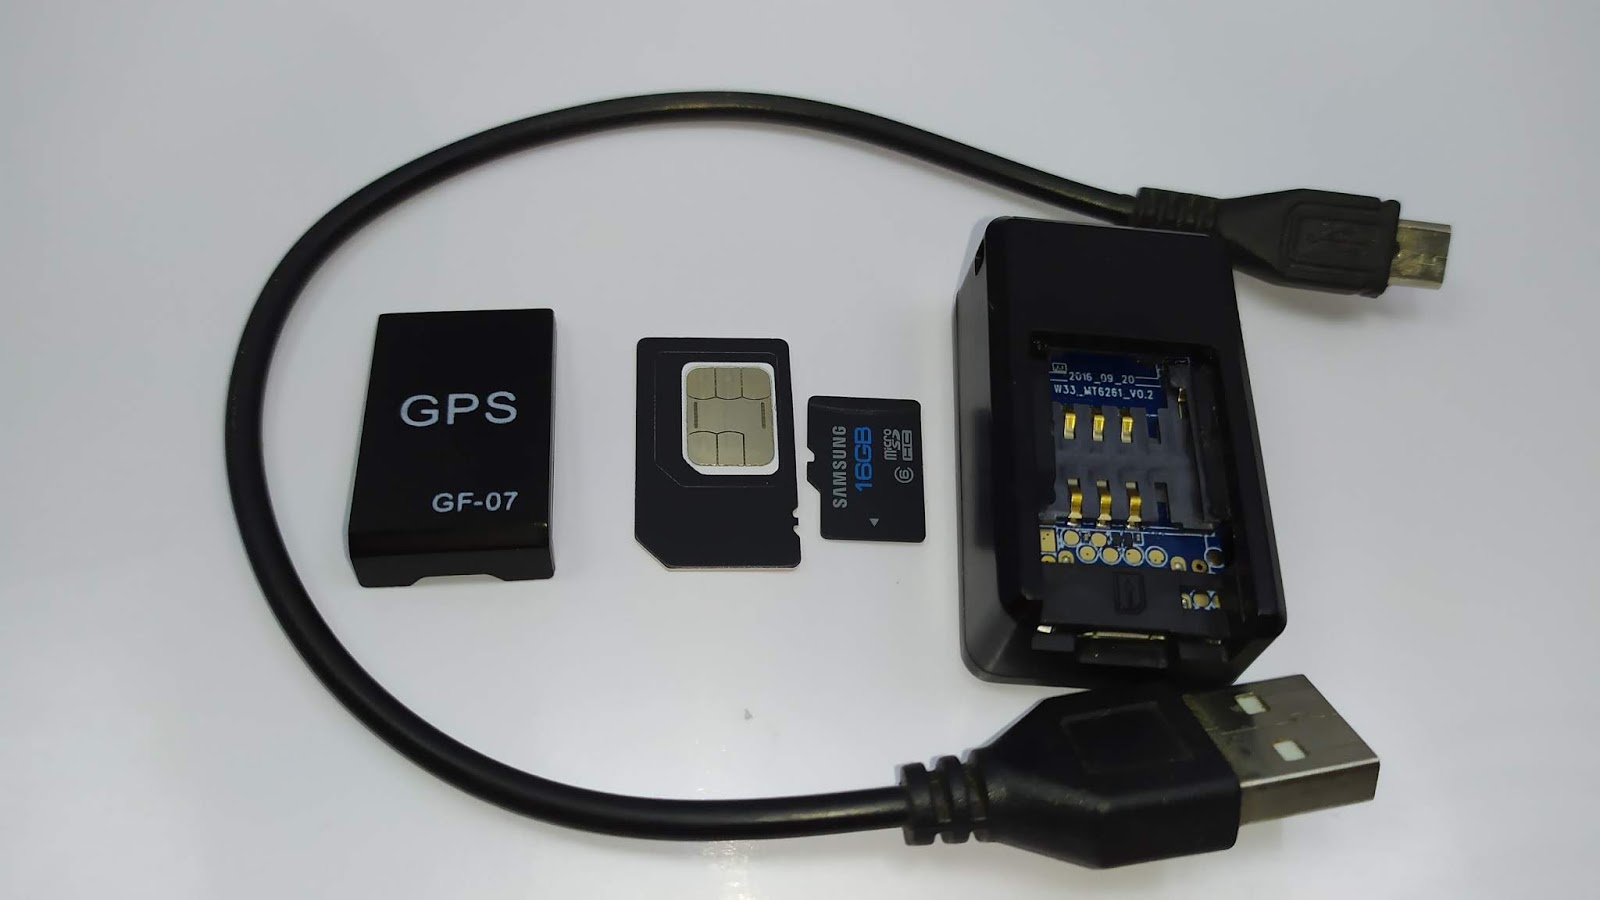 جهاز صغير و خطير للتجسس و تتبع الموقع + كيفية الحصول عليه GF-07